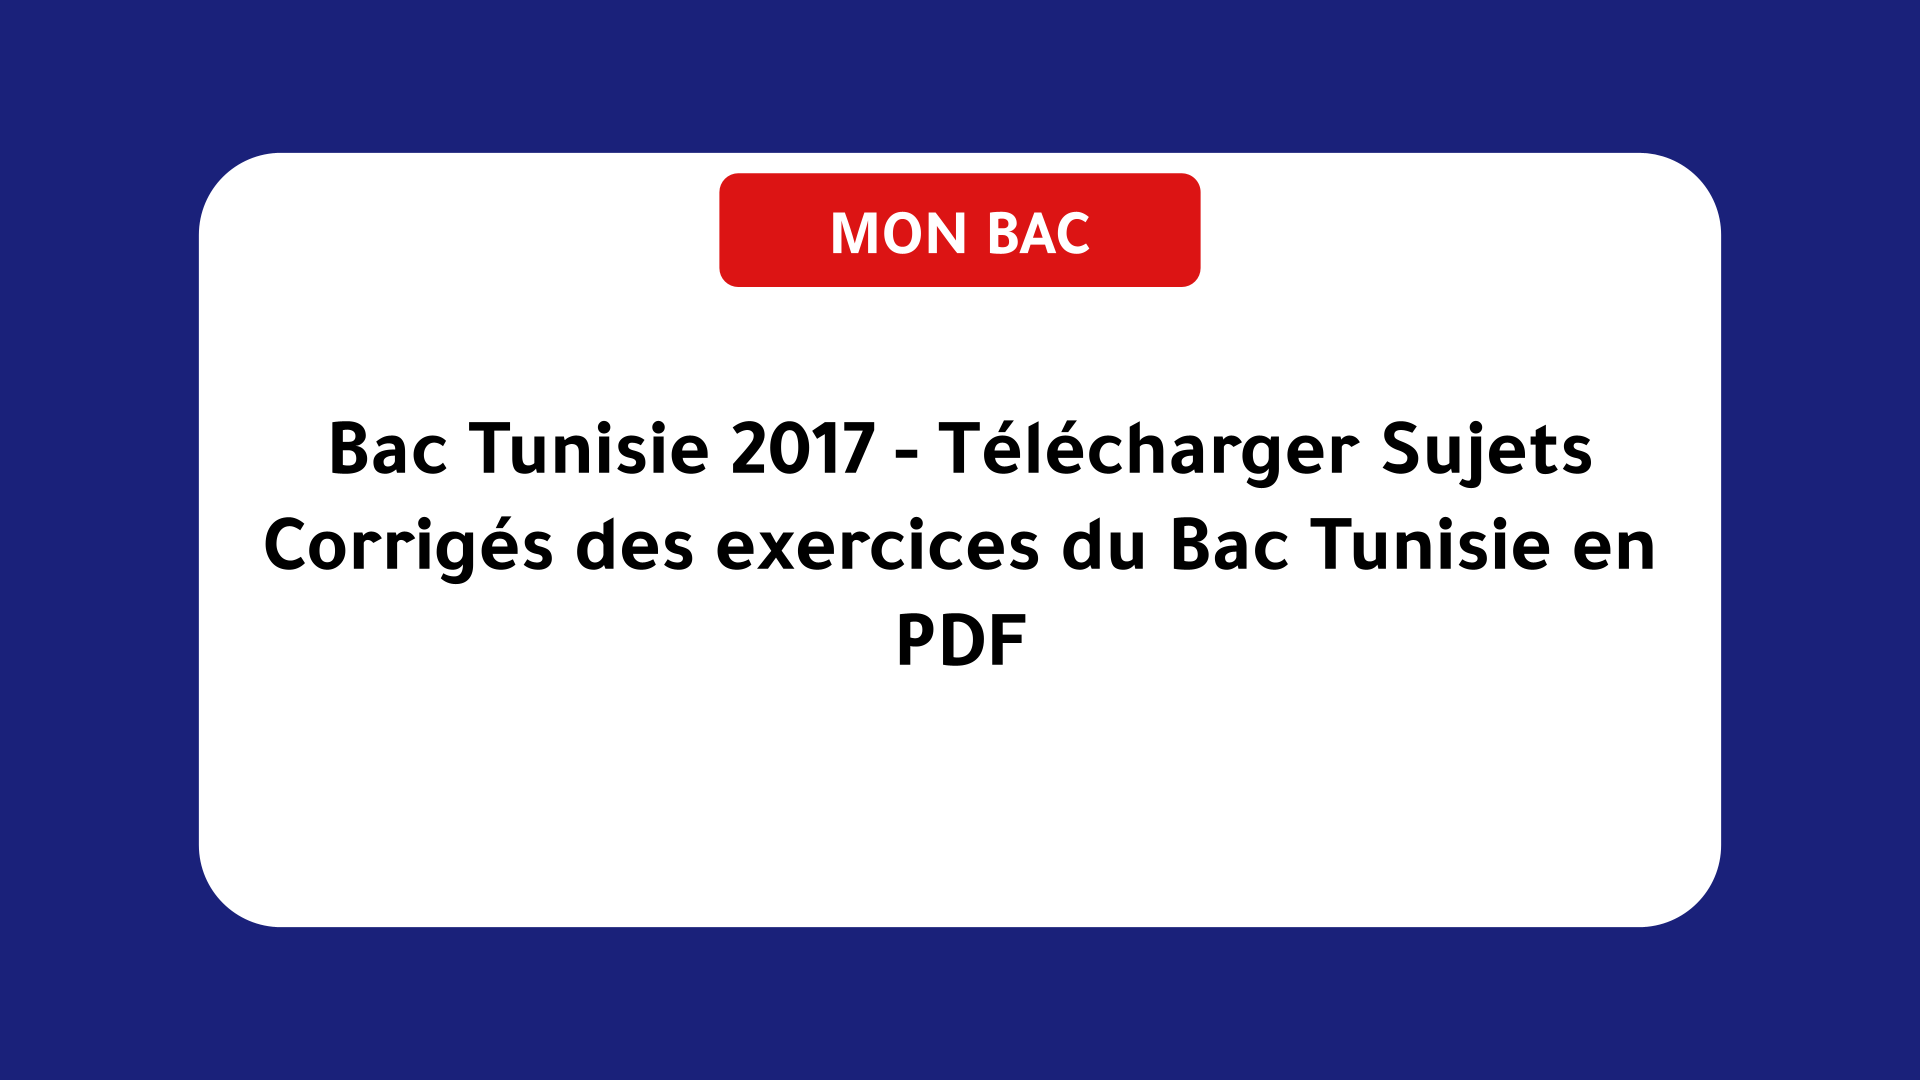 Bac Tunisie 2017 - Télécharger Sujets Corrigés des exercices du Bac Tunisie en PDF